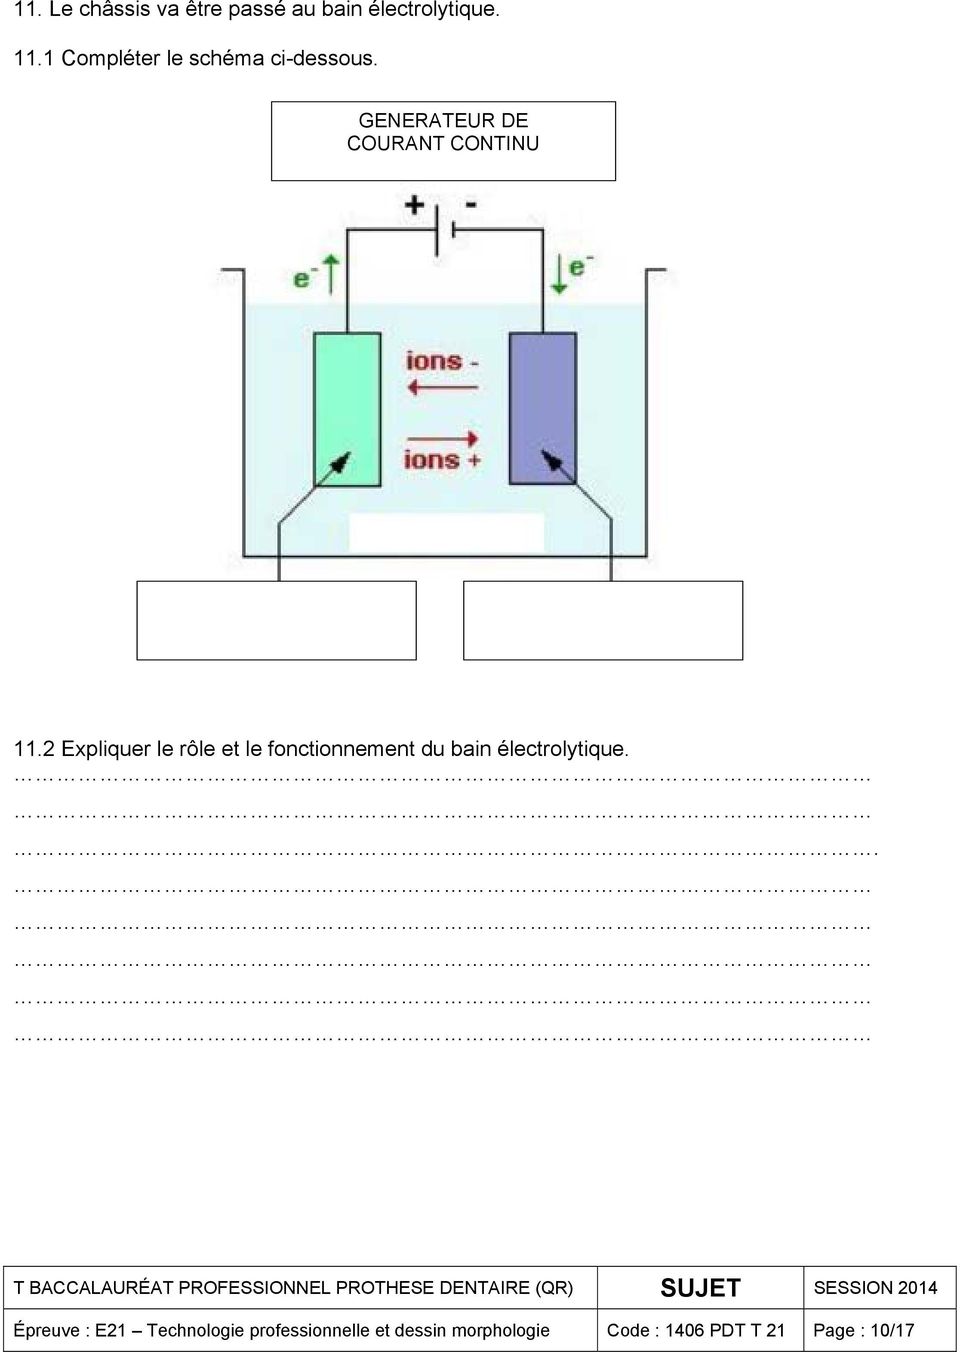 2 Expliquer le rôle et le fonctionnement du bain électrolytique.